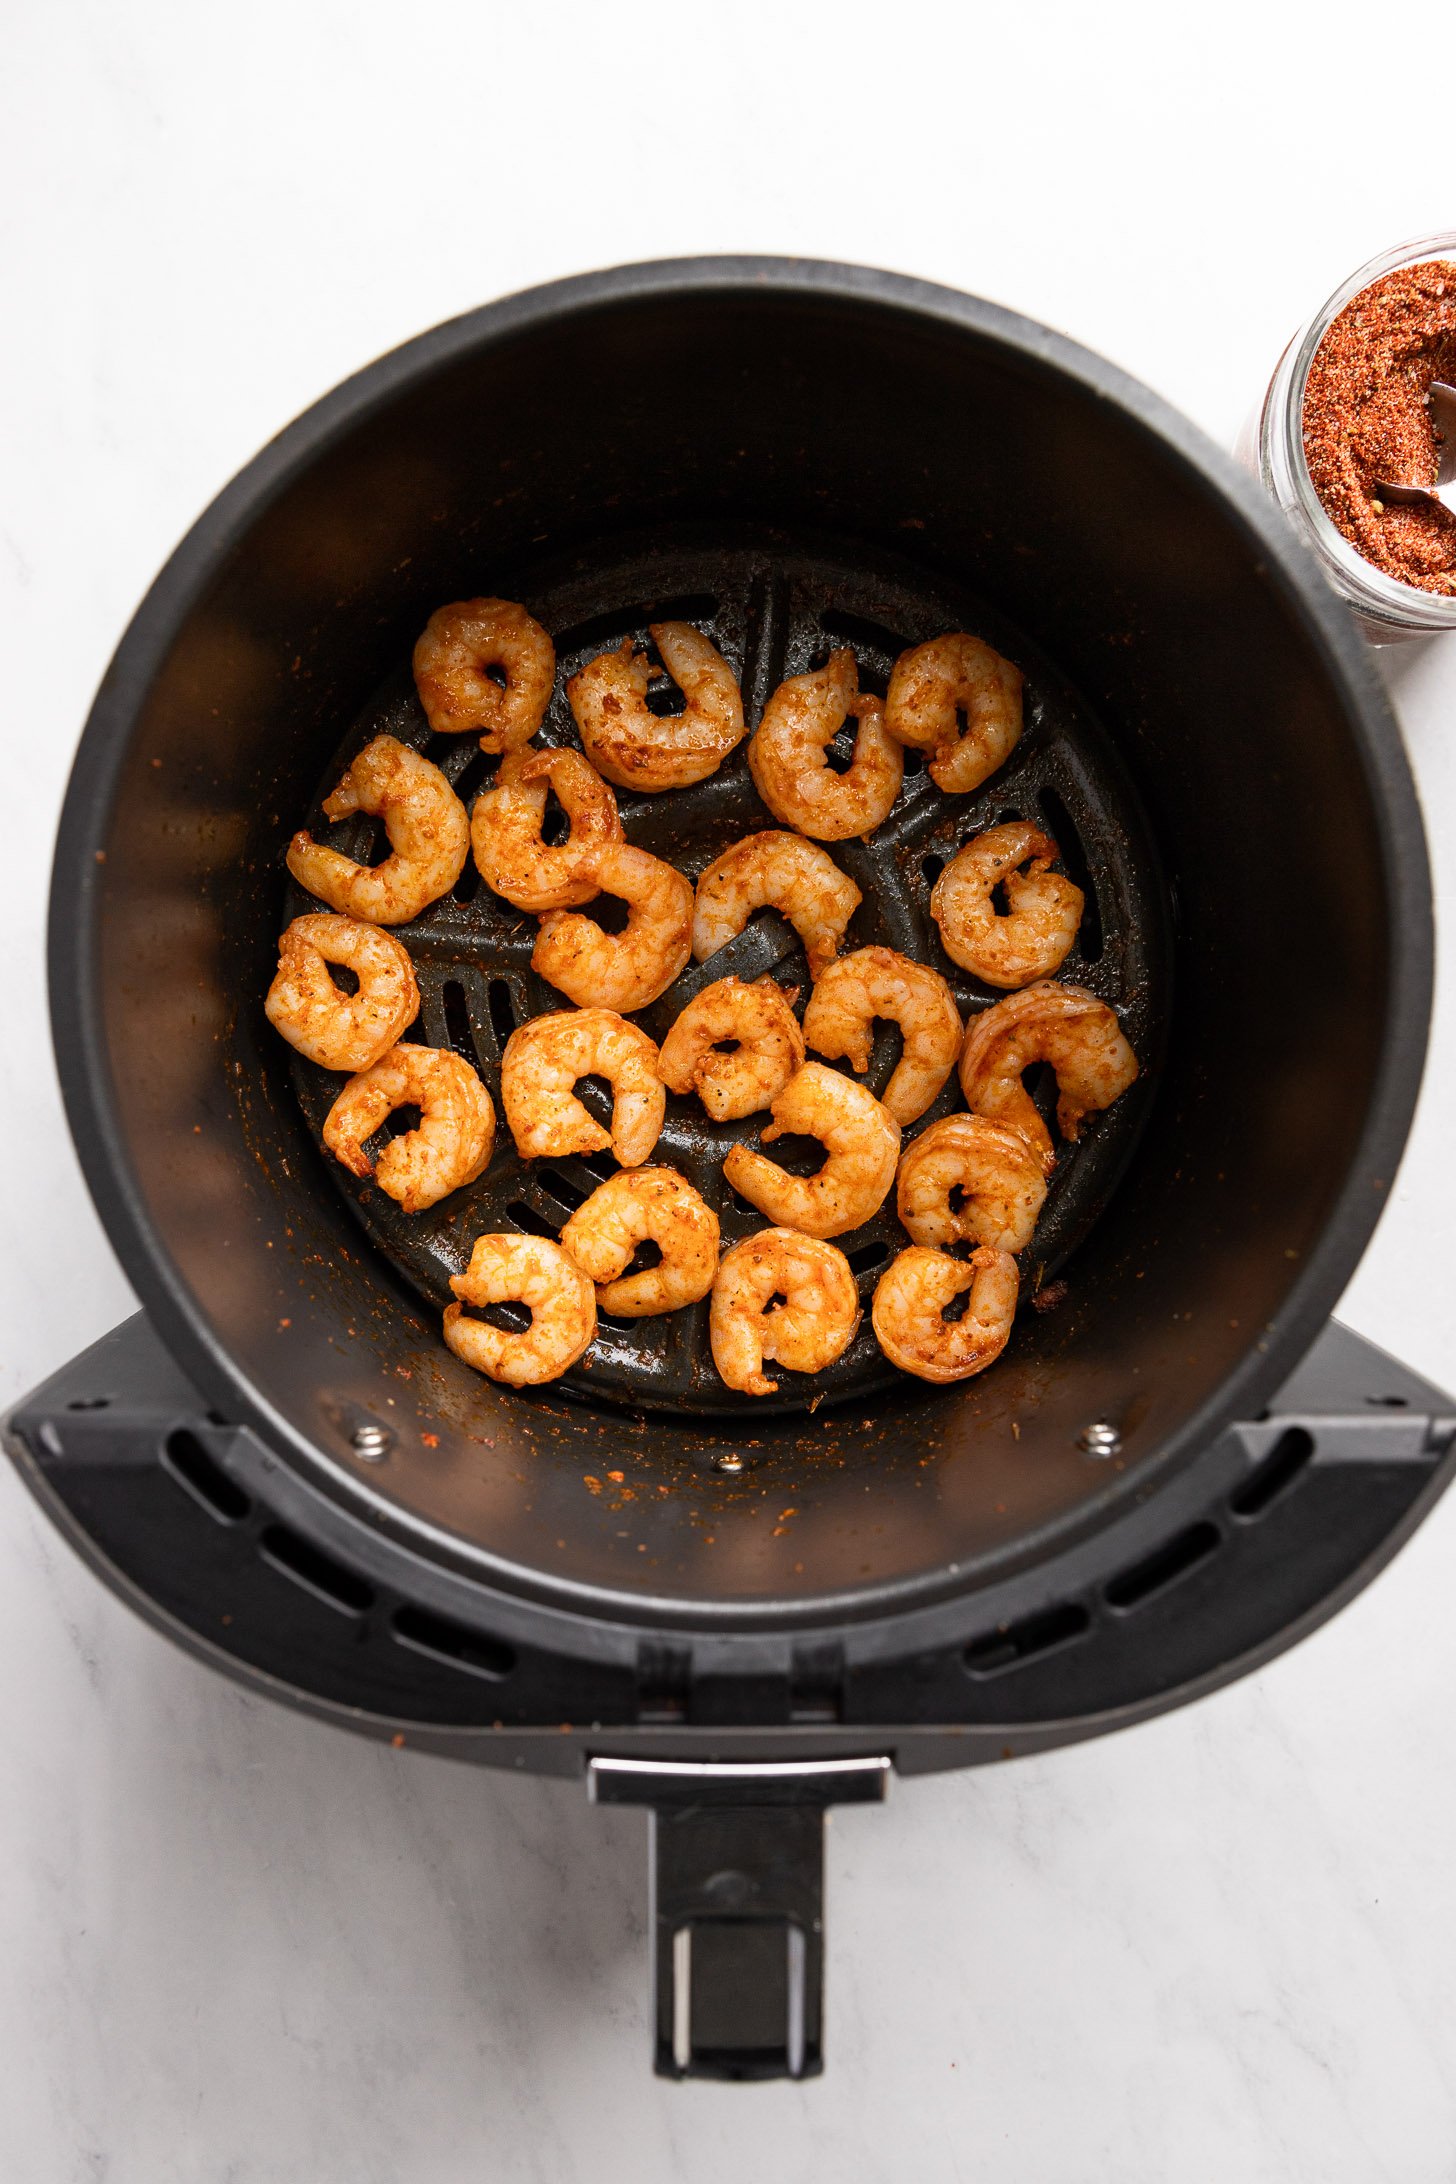 Cajun shrimp in air fryer basket after cooking.